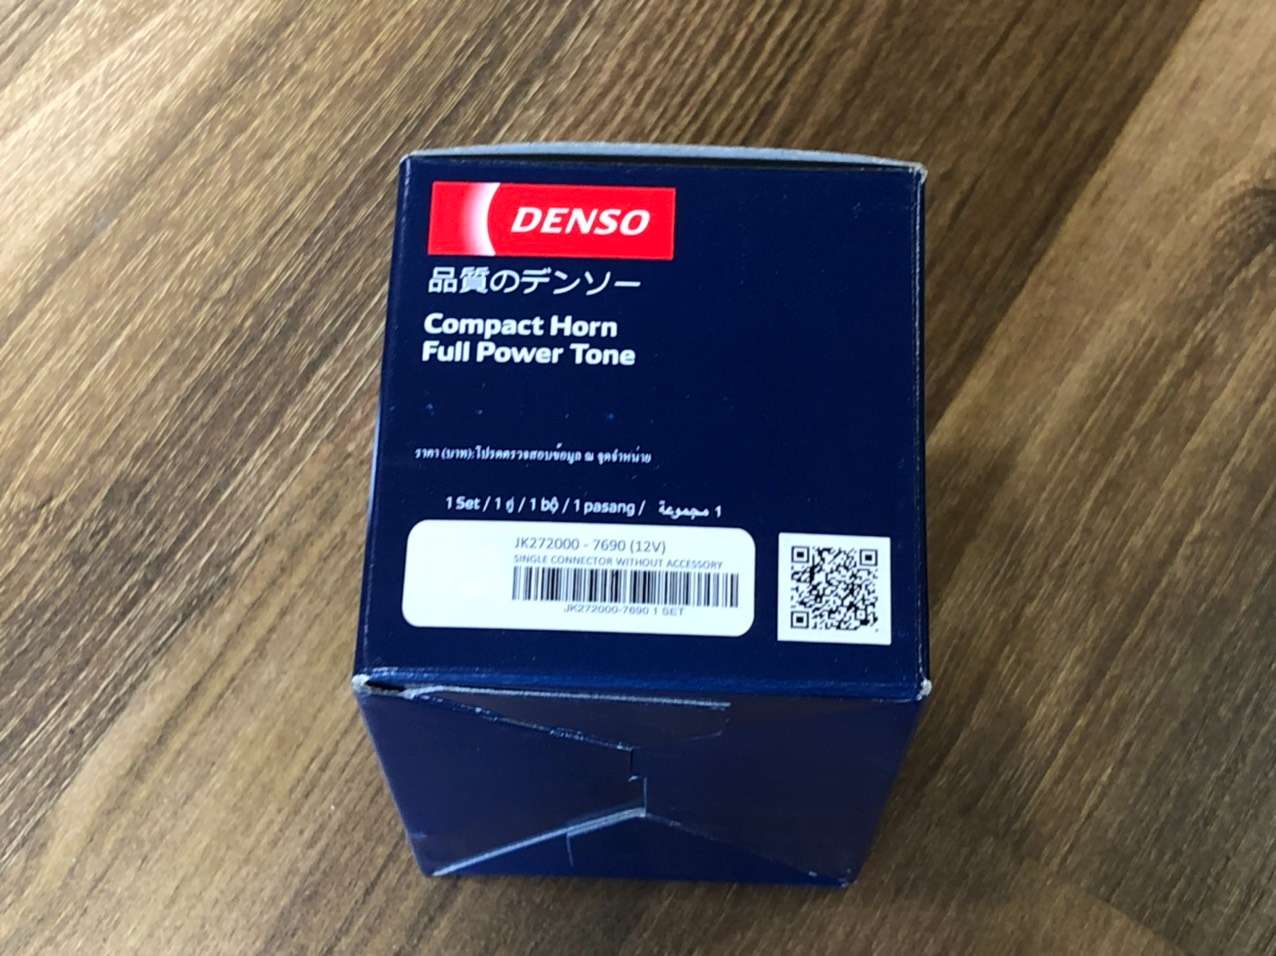 Còi đĩa Denso xe Ford Everest 12v 1 giắc hàng chính hãng (JK272000-7690)